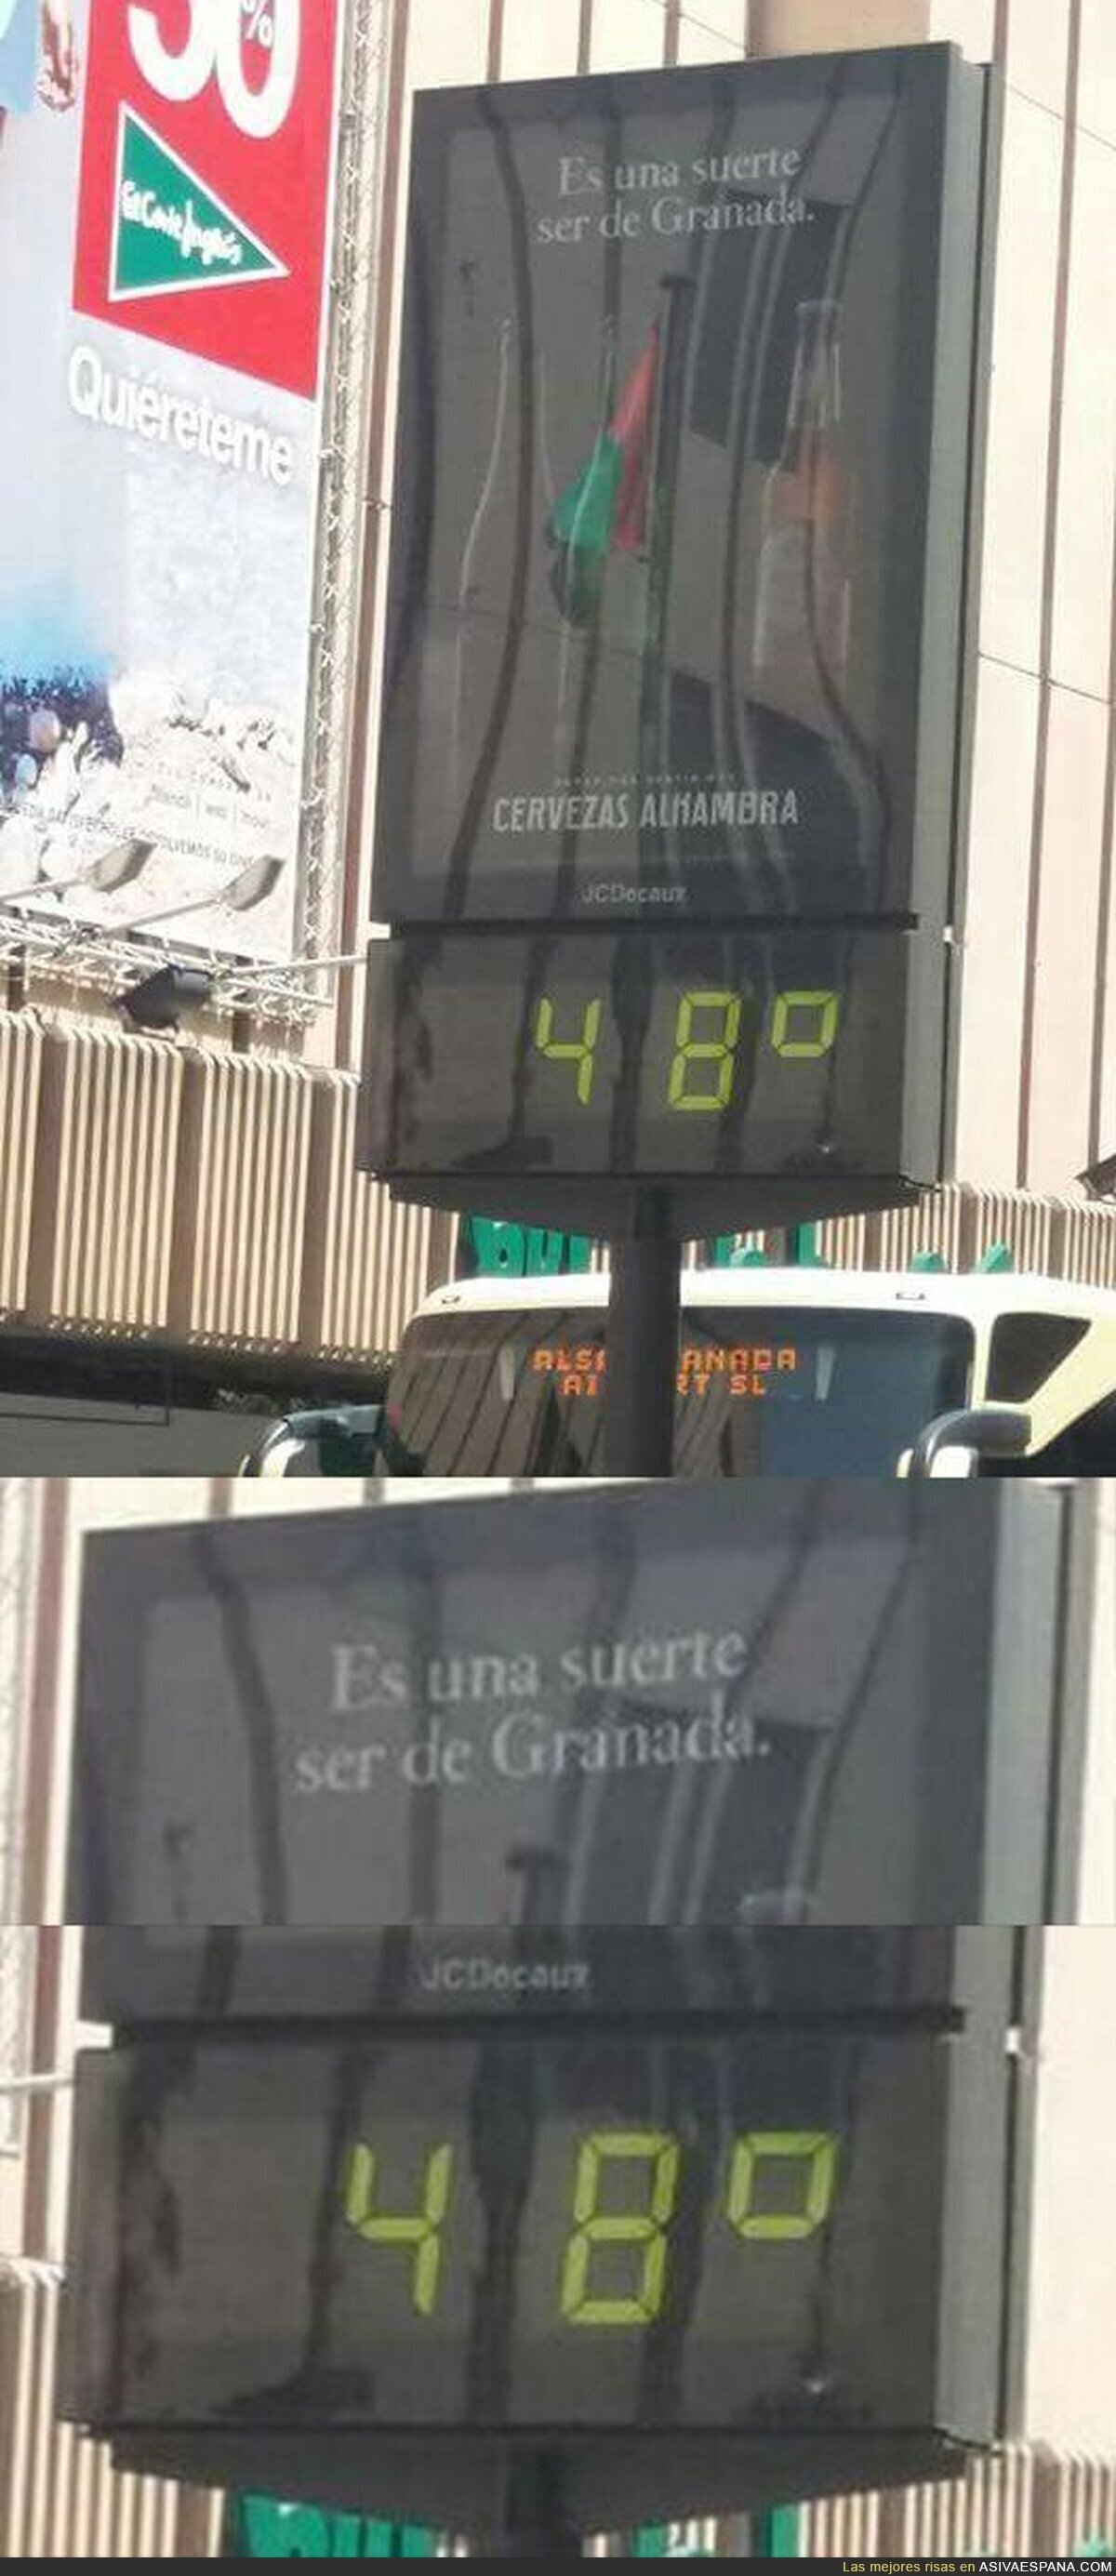 La publicidad en este termómetro de Granada no es muy afortunada